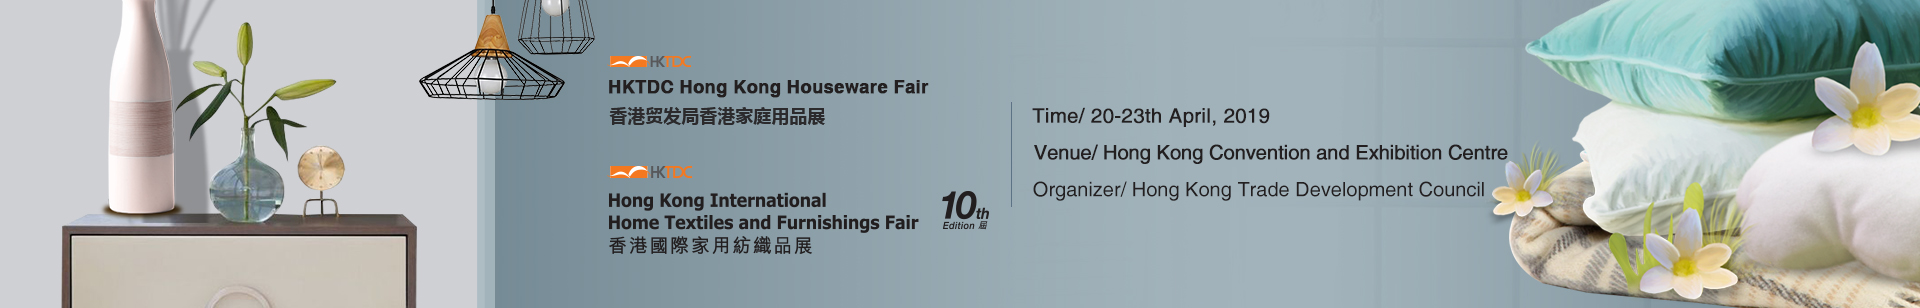 HKTDC HK Houseware Fair & Int'l Home Textiles and Furnishings Fair